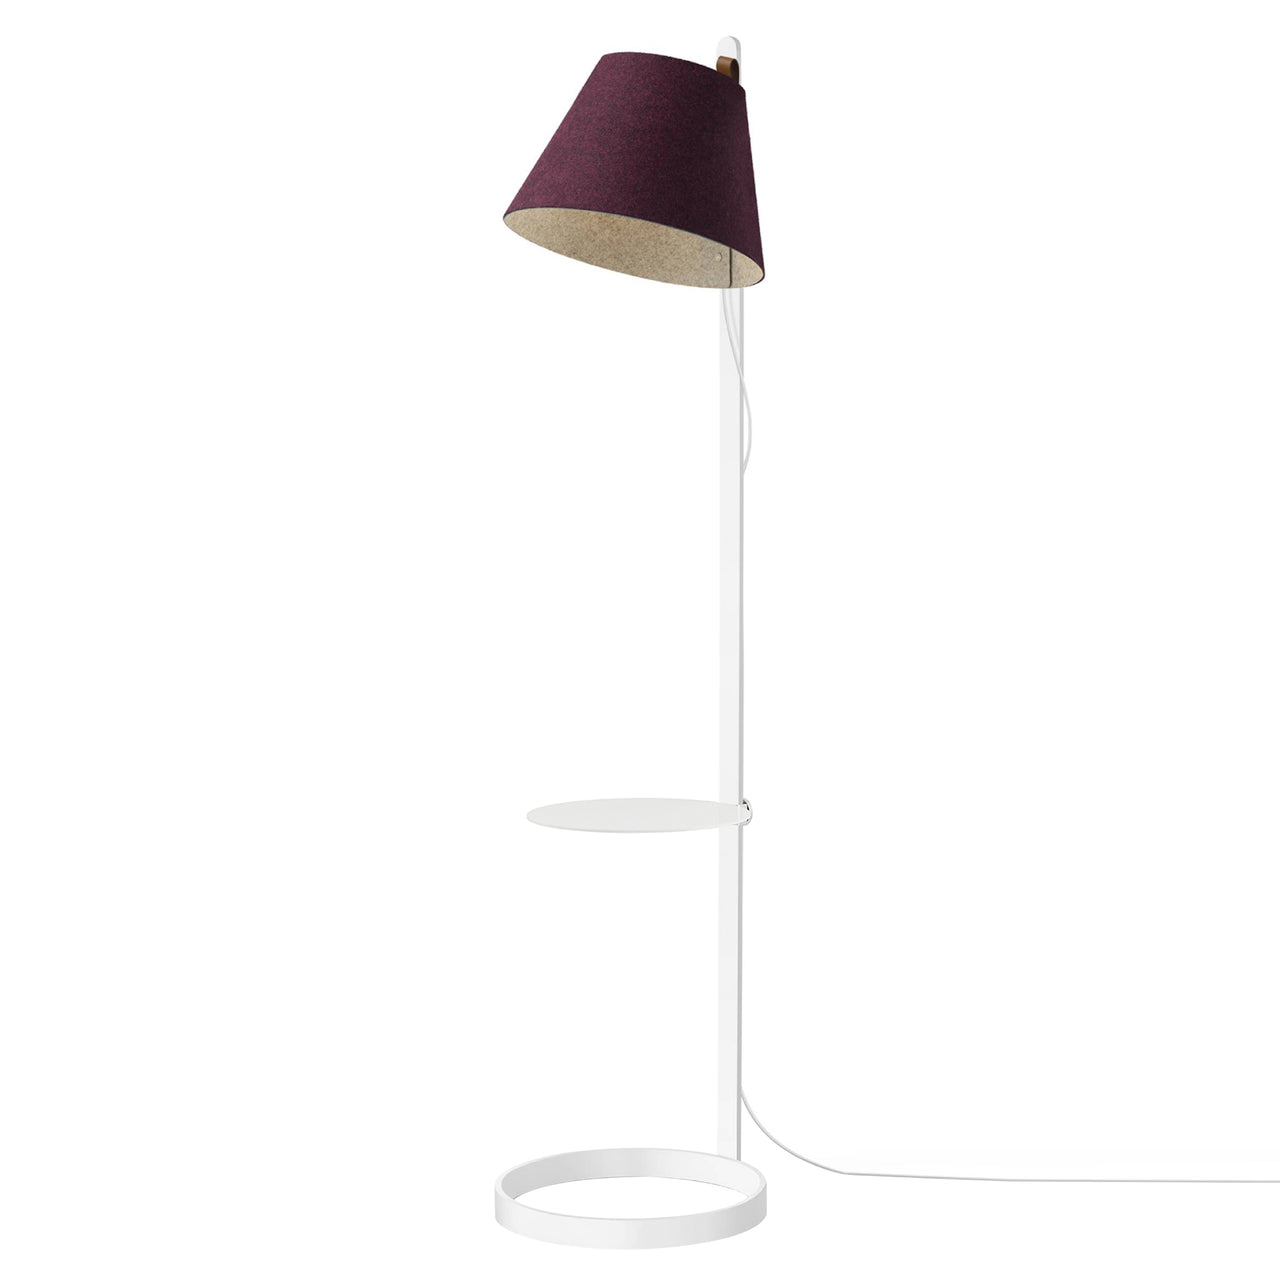 Lana Magnetic Floor Lamp: Plum + White